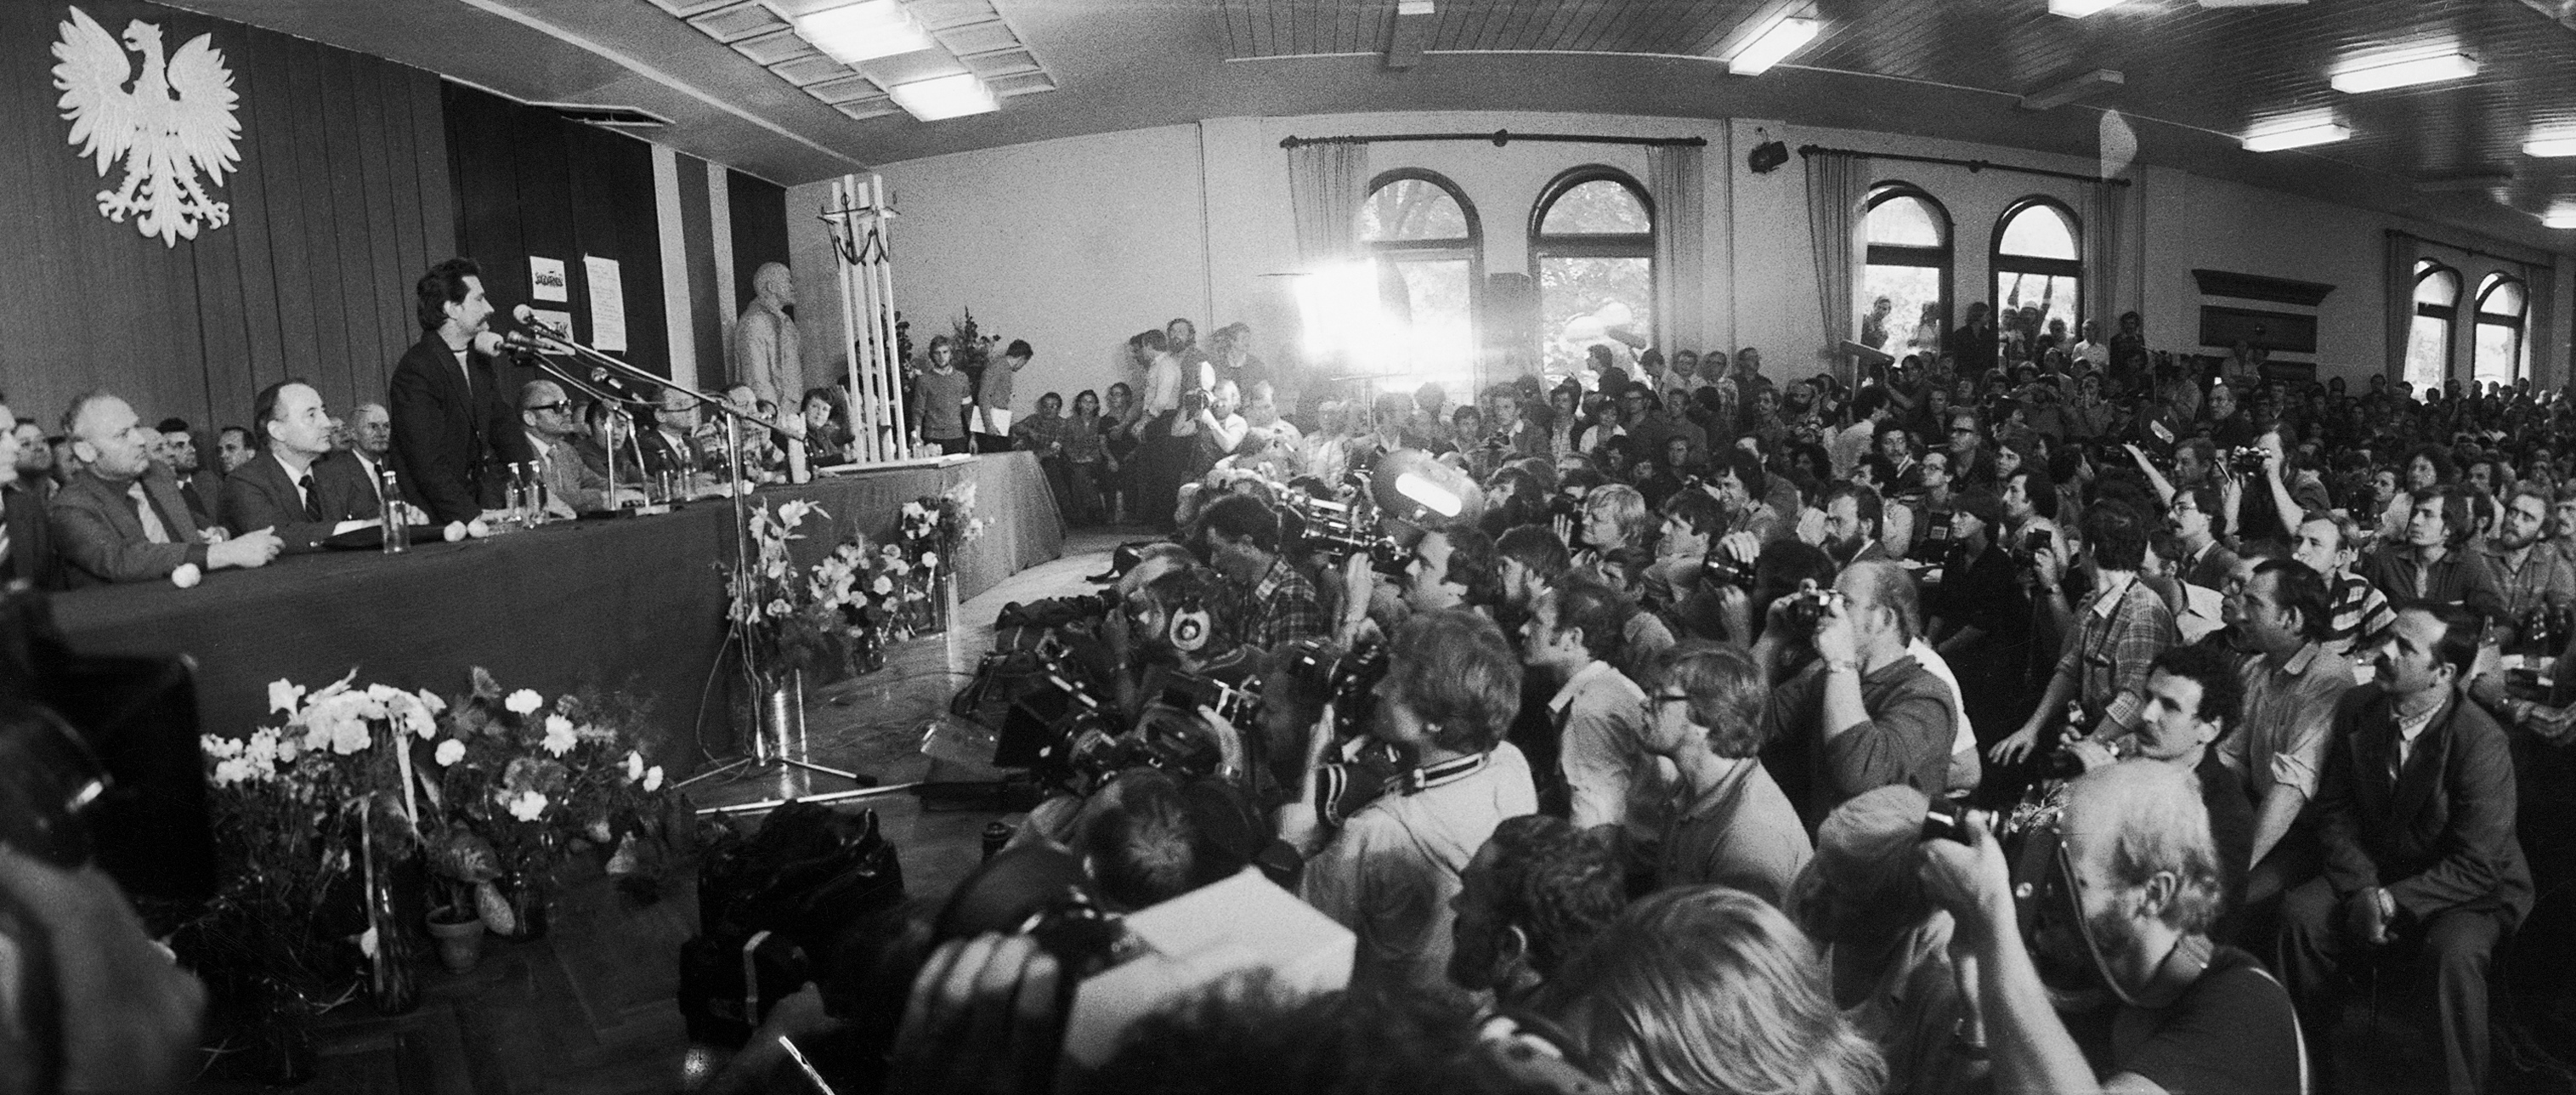 Podpisanie Porozumień Sierpniowych, kończących strajk okupacyjny w Stoczni Gdańskiej w sali BHP, 31 sierpnia 1980 r.